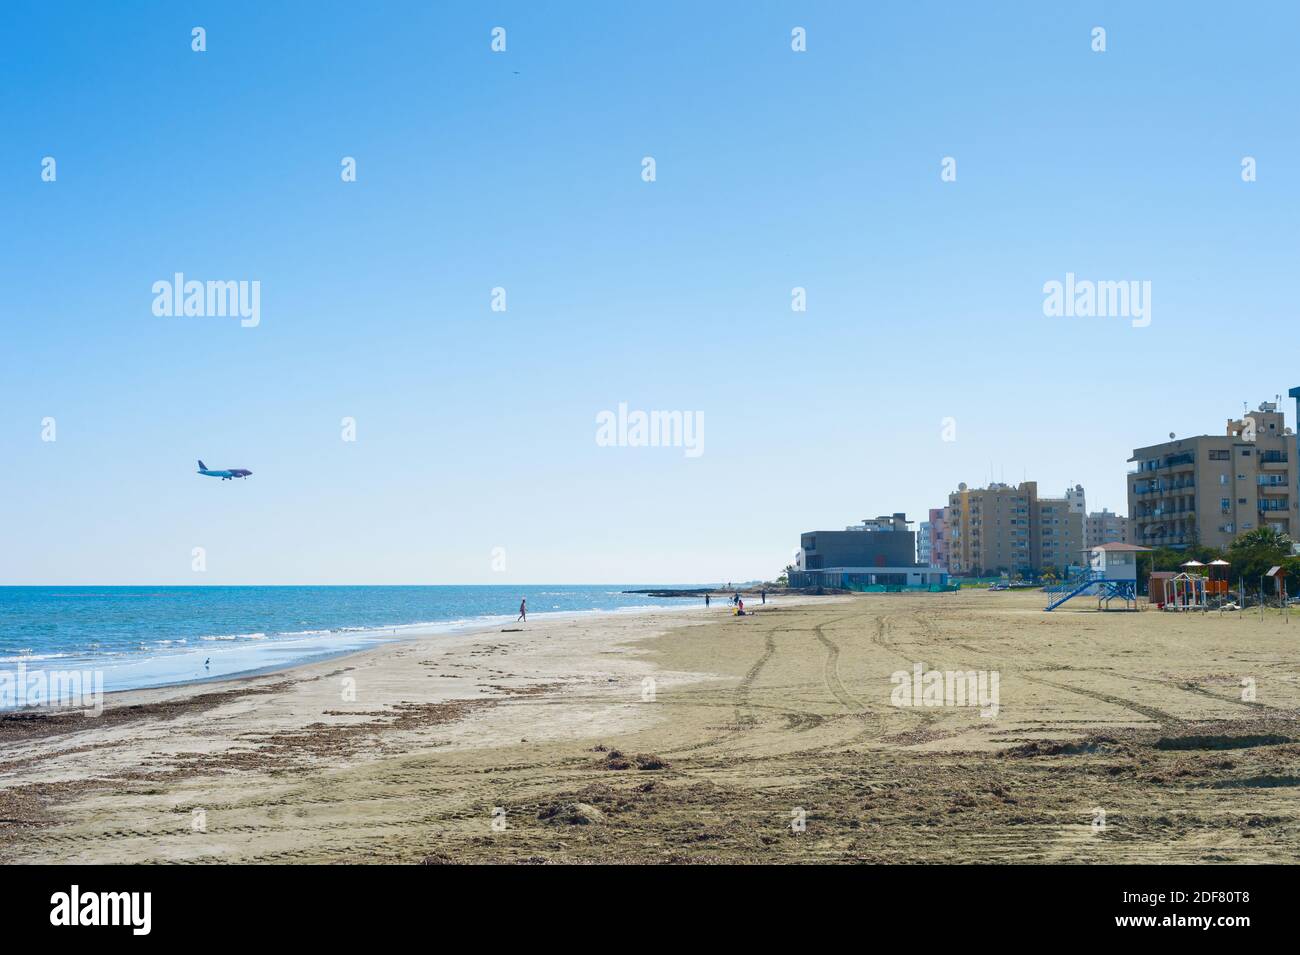 El avión llega al aeropuerto de Larnaca. Playa de arena y edificio de apartamentos. Larnaca, Chipre Foto de stock